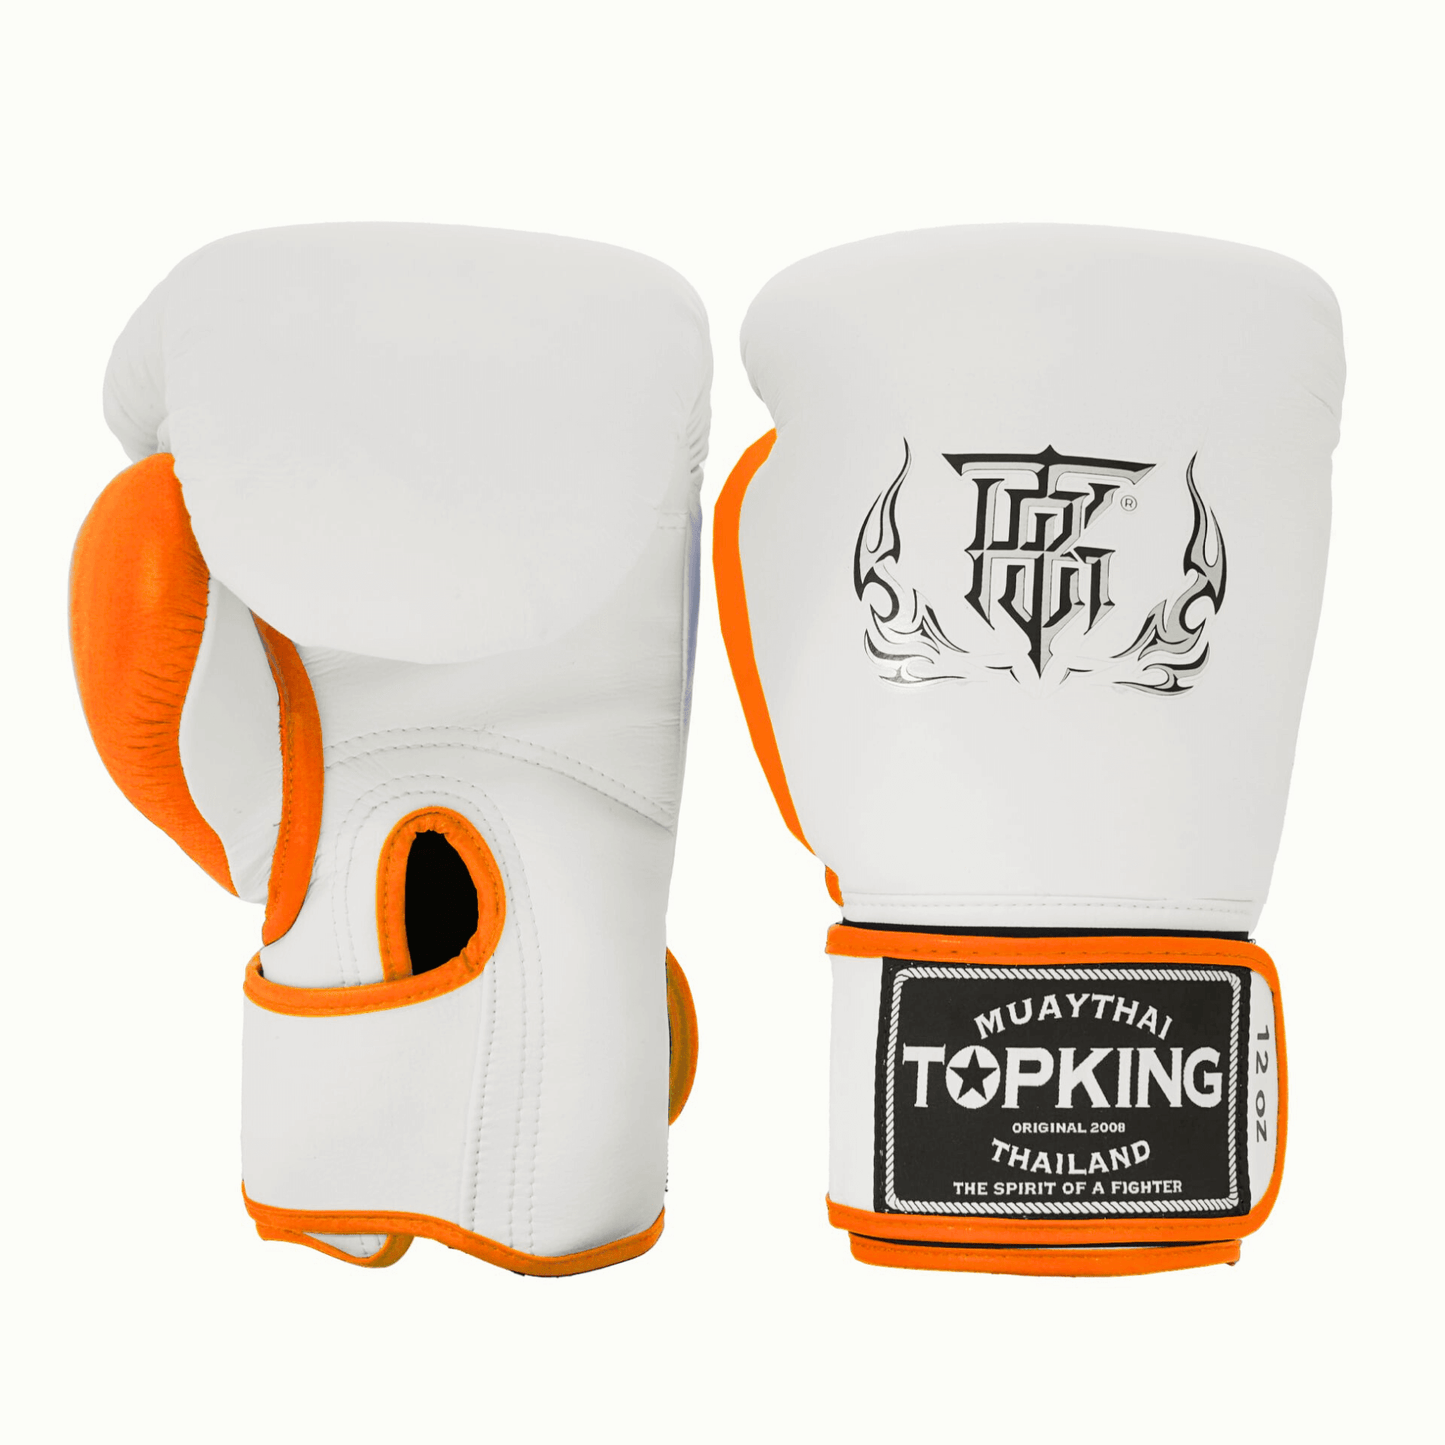 Top King Reborn White-Orange Boxing Gloves